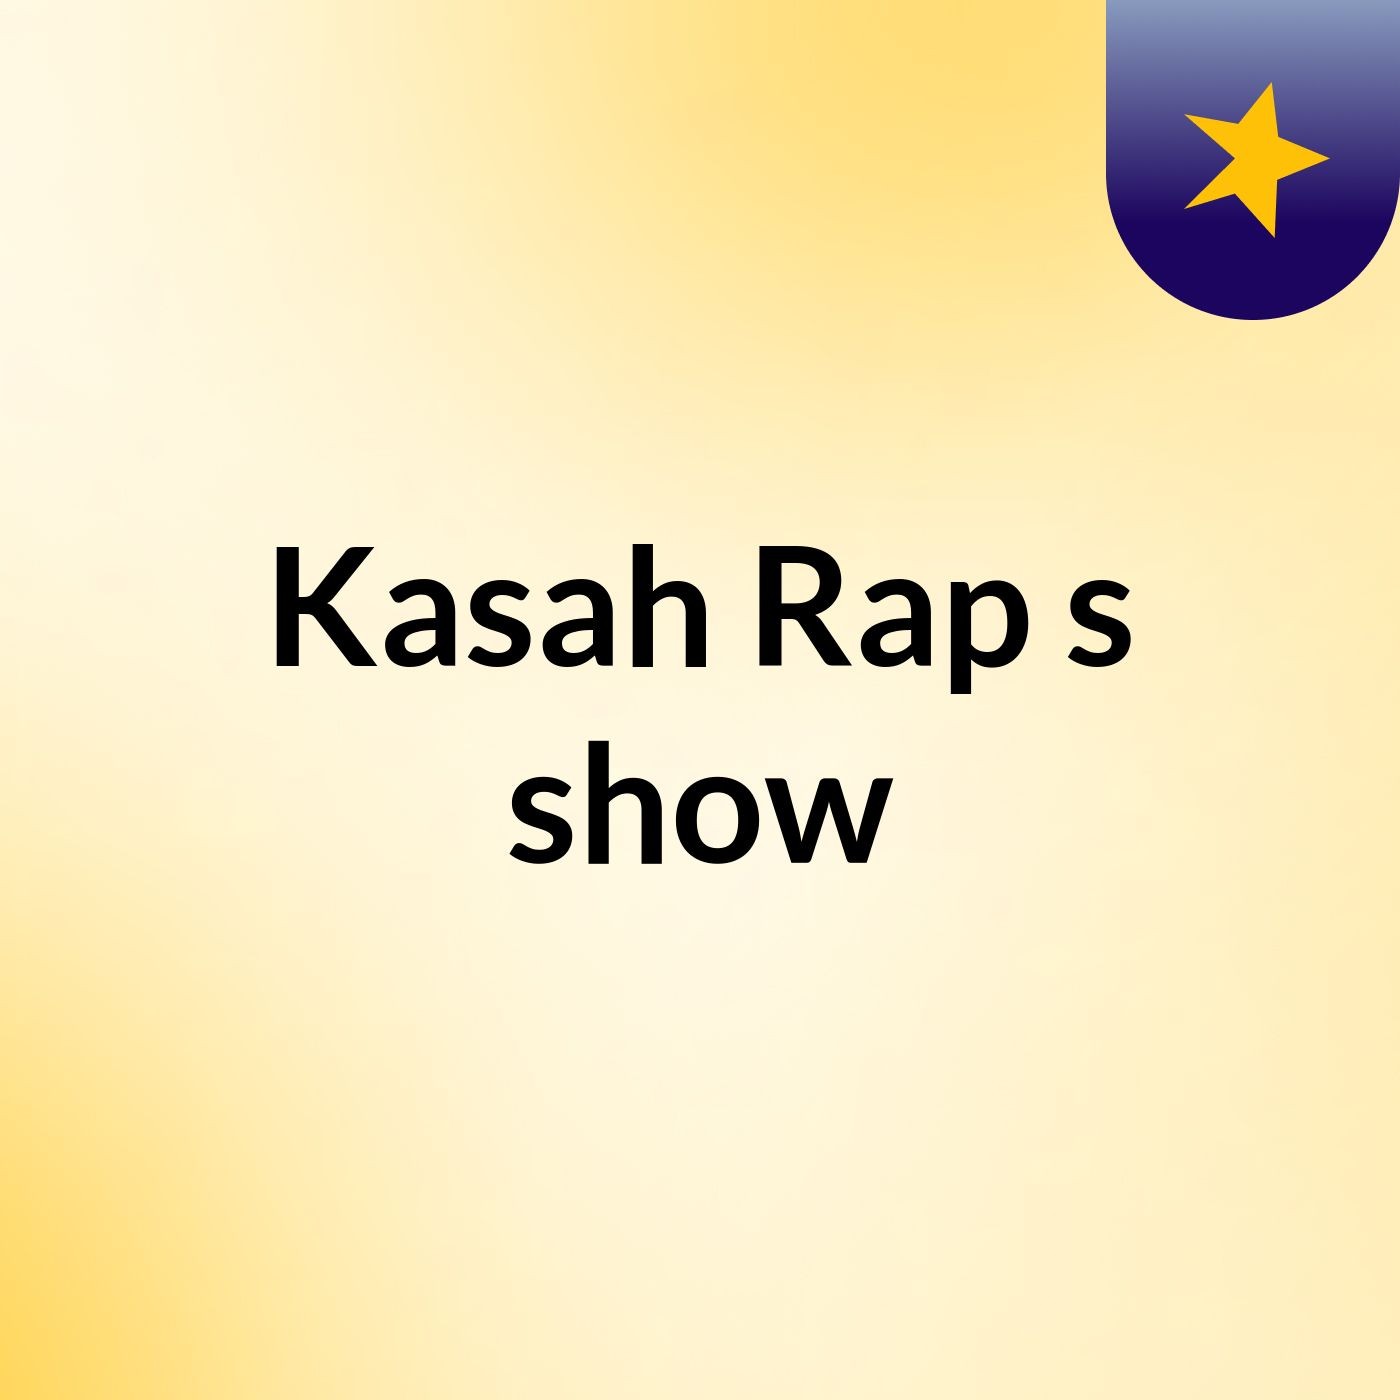 Kasah Rap's show